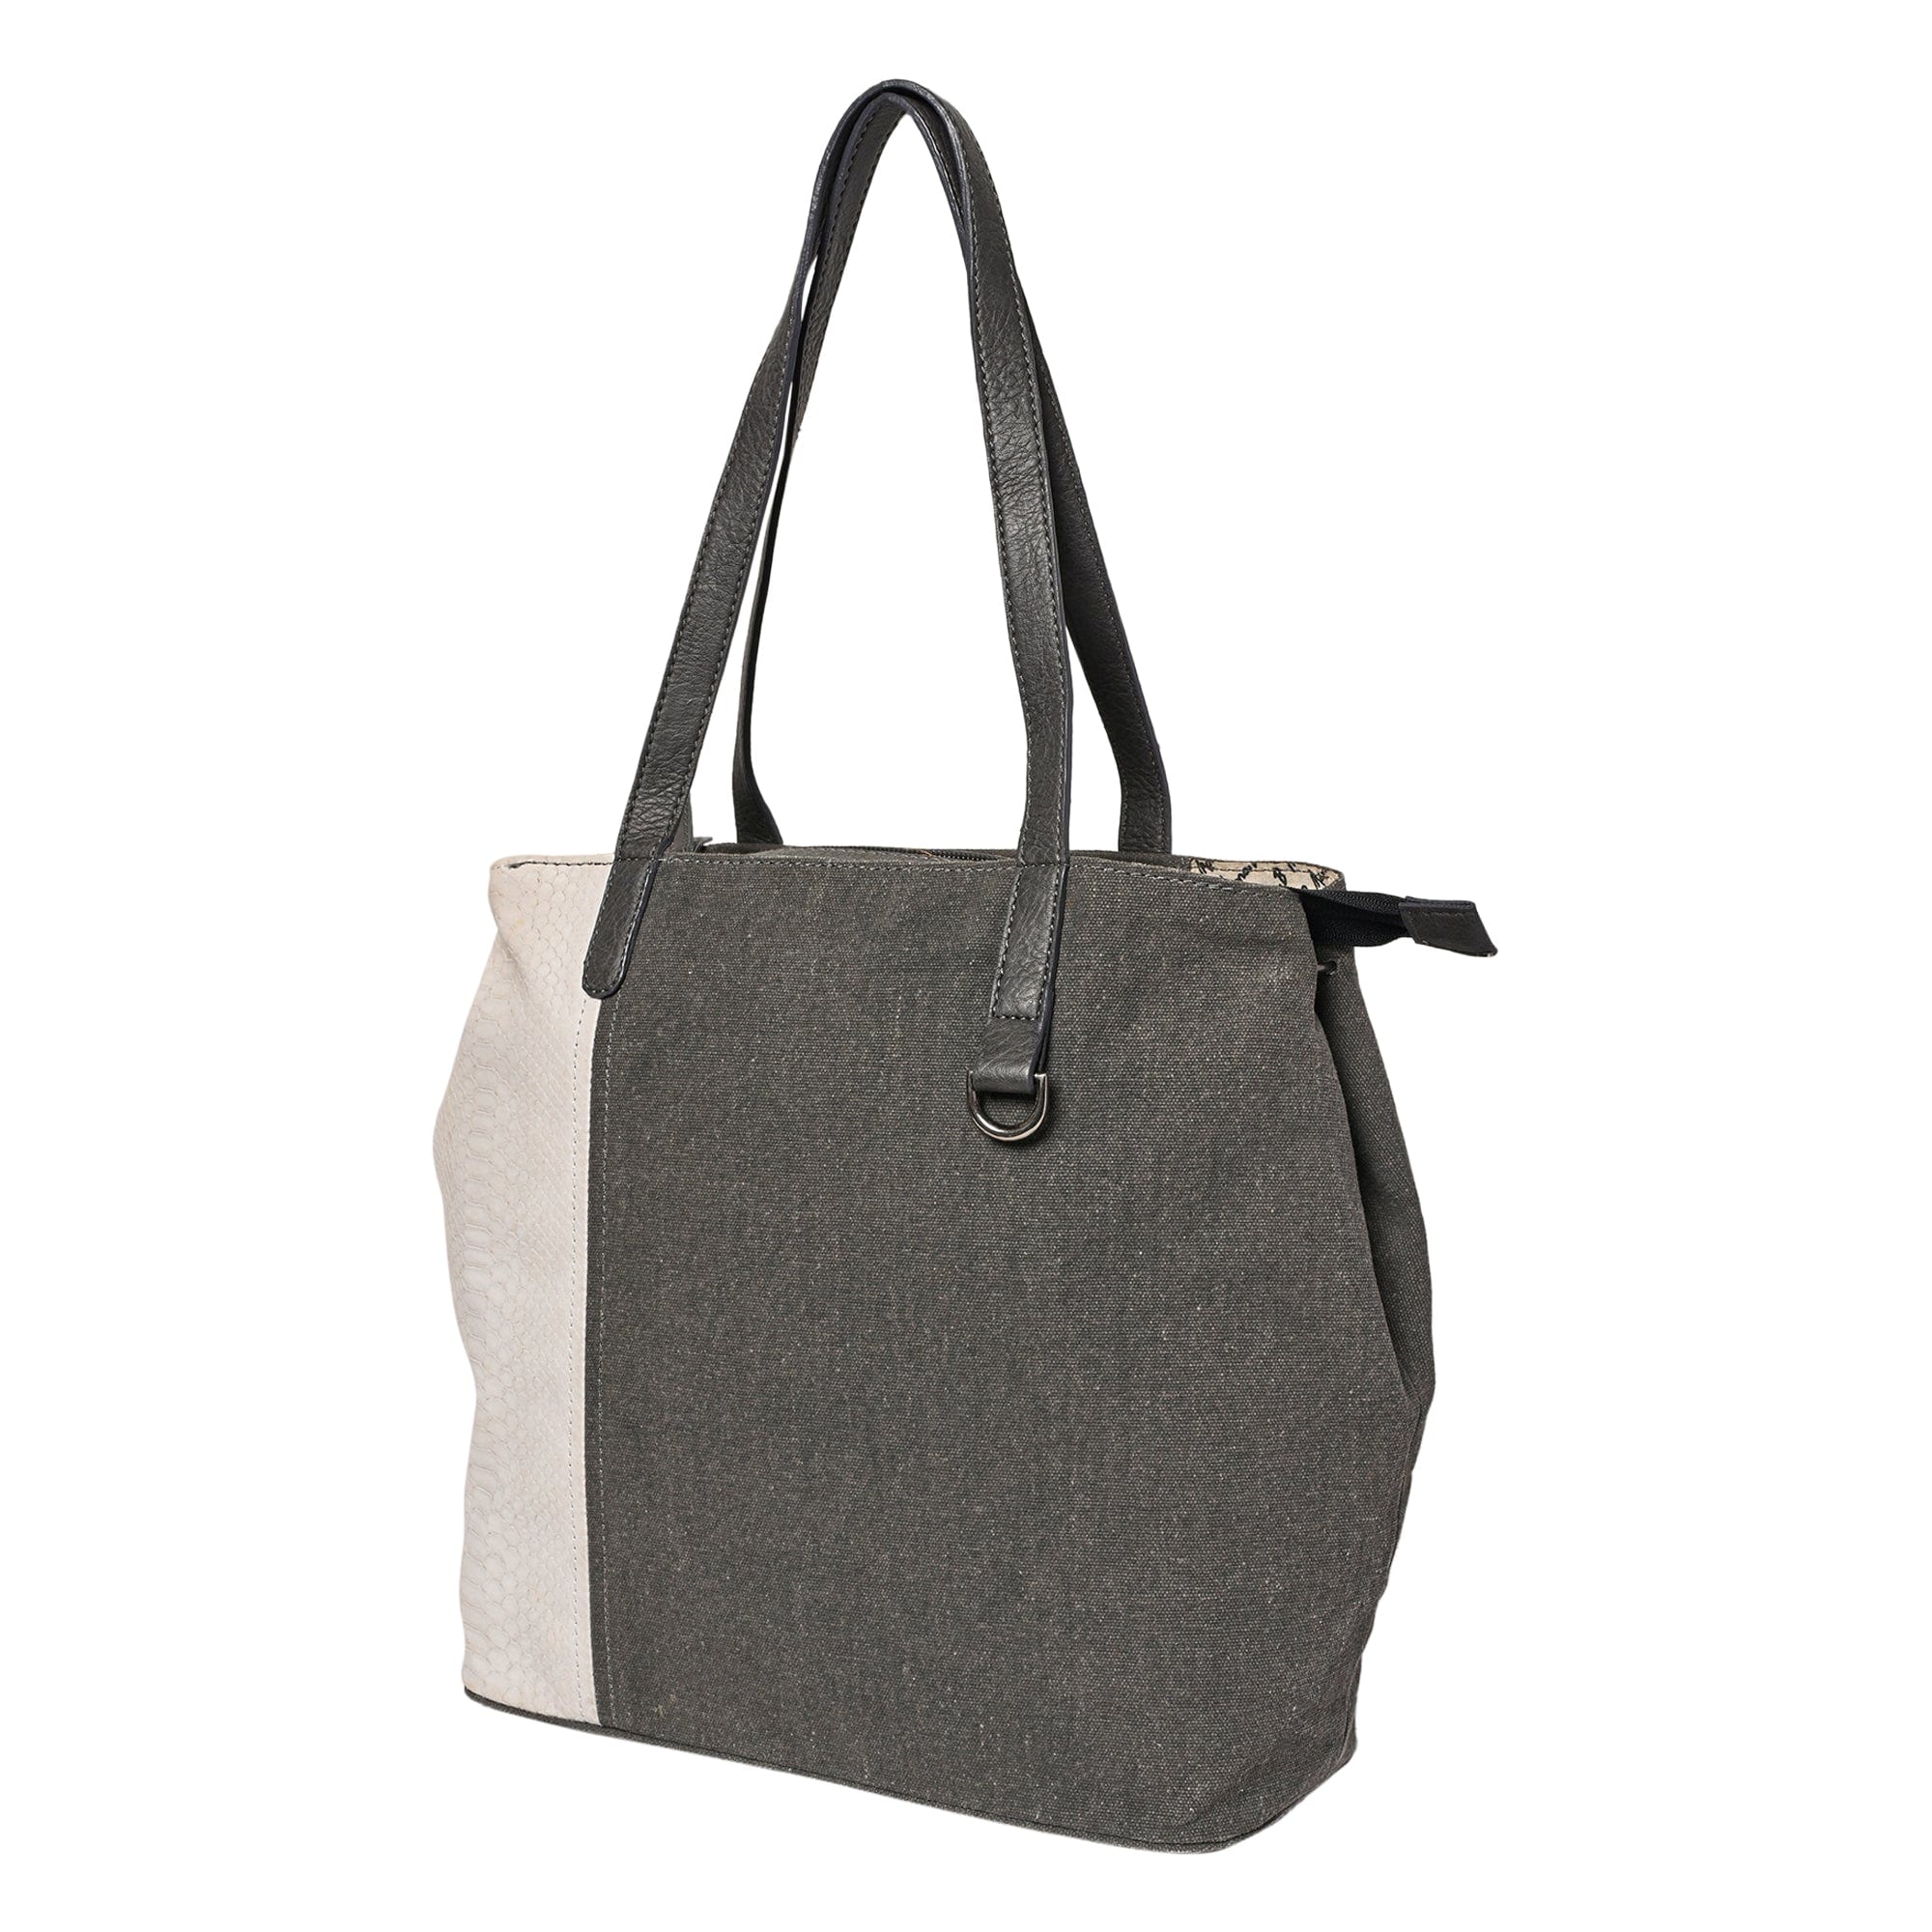 Buy Handbags for Women  Best Tote Handbags Online – Mona B India